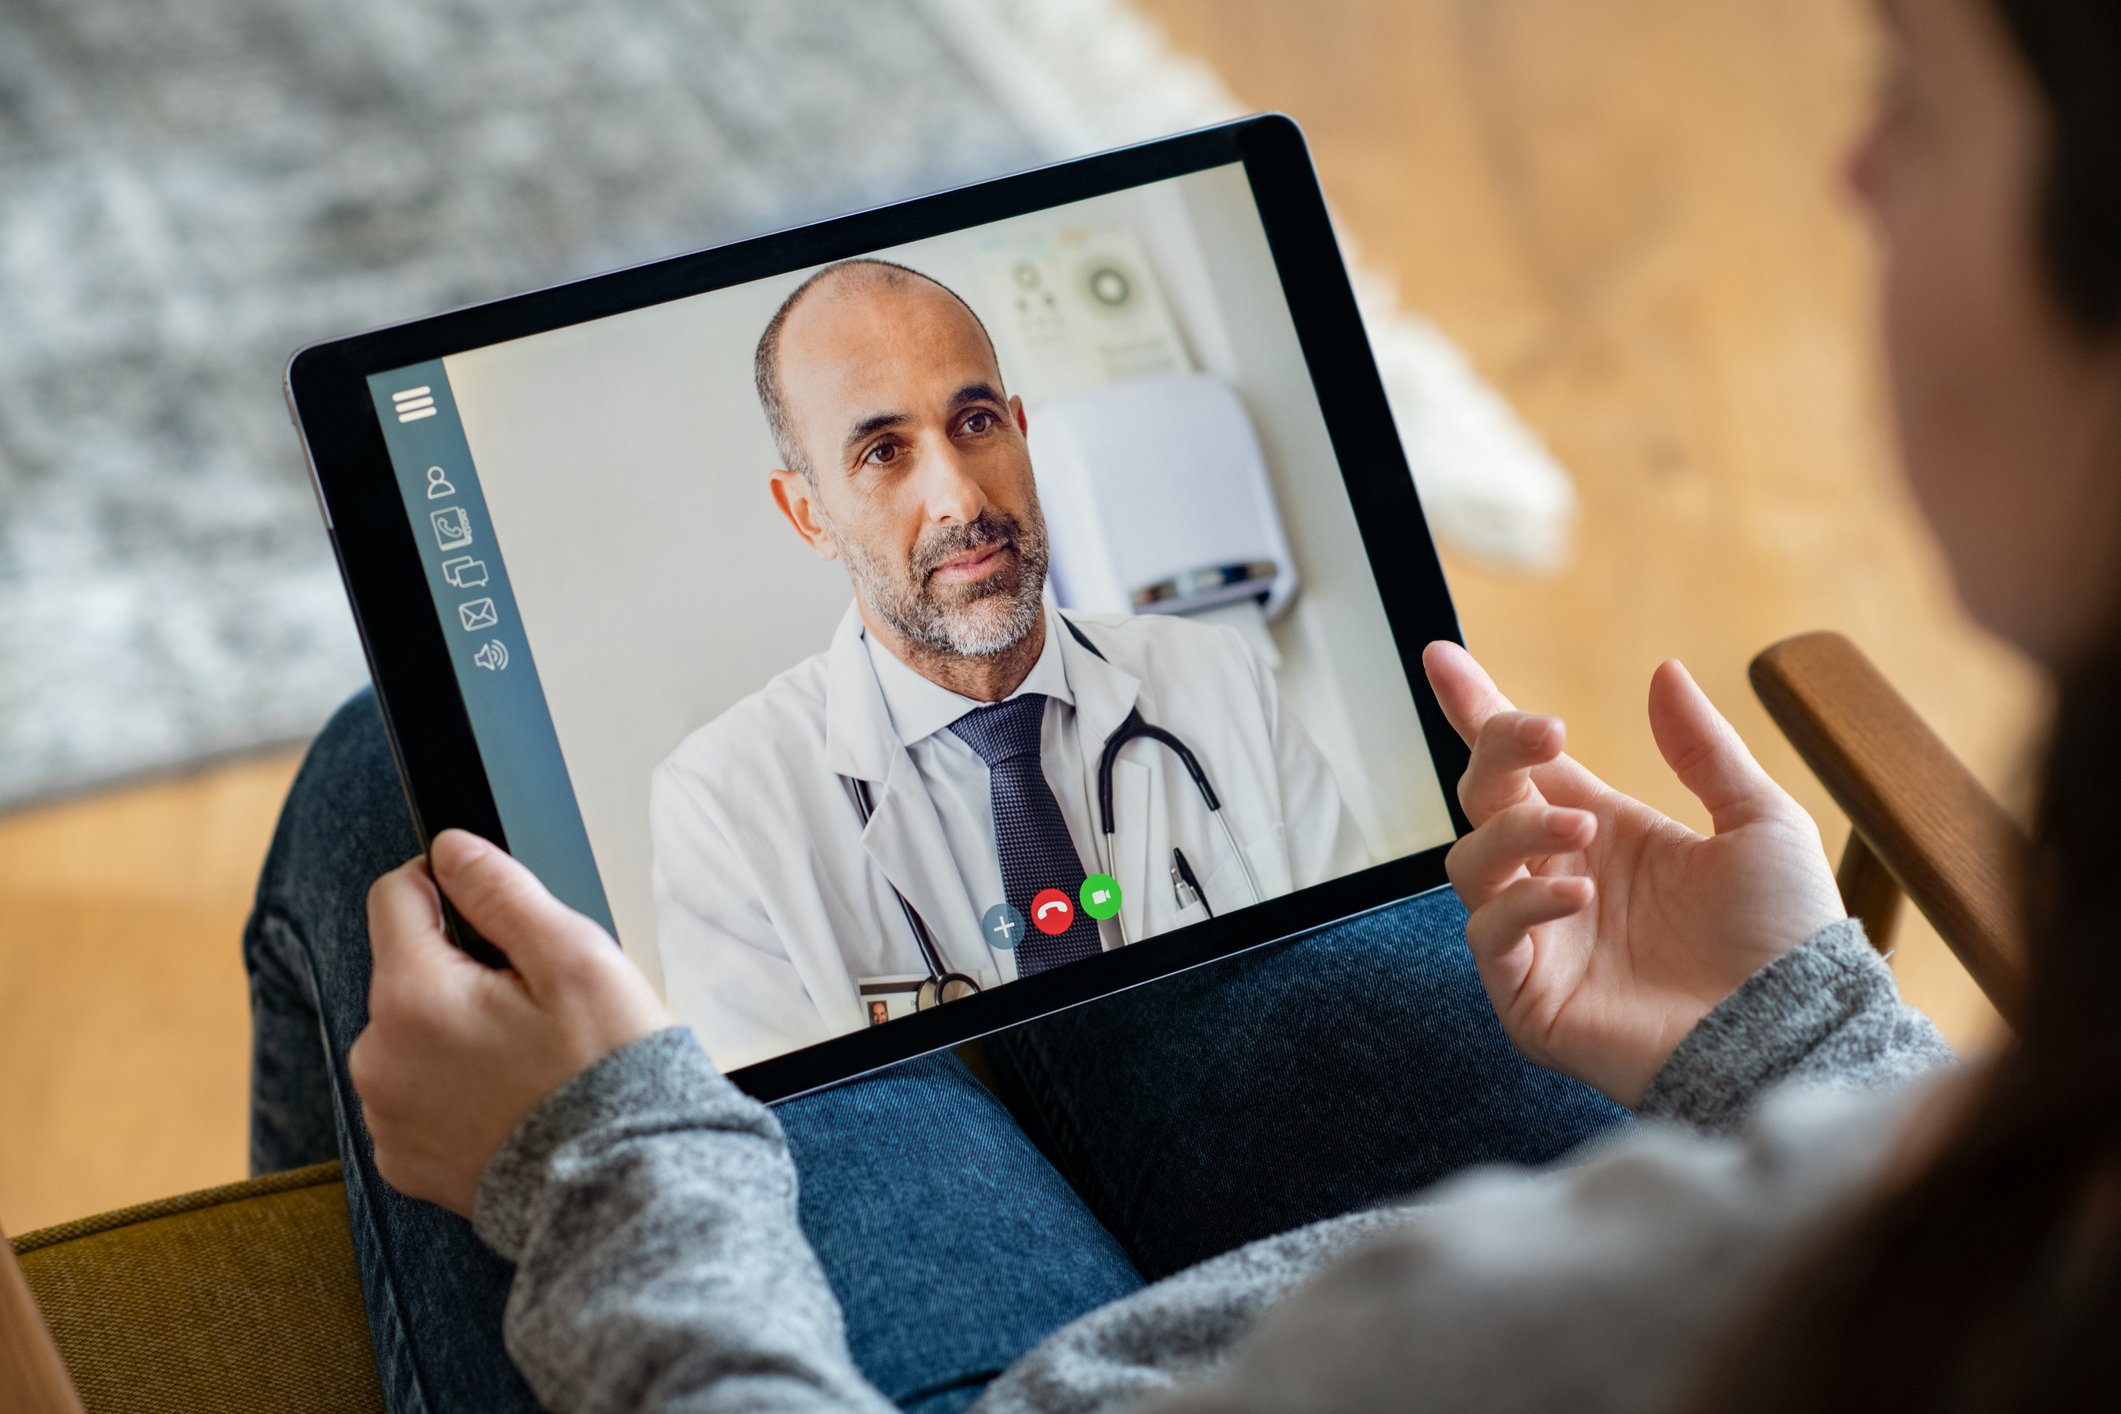 Bild eines Patienten, der ein iPad auf dem Schoß hält und per Videosprechstunde mit einem Arzt kommuniziert